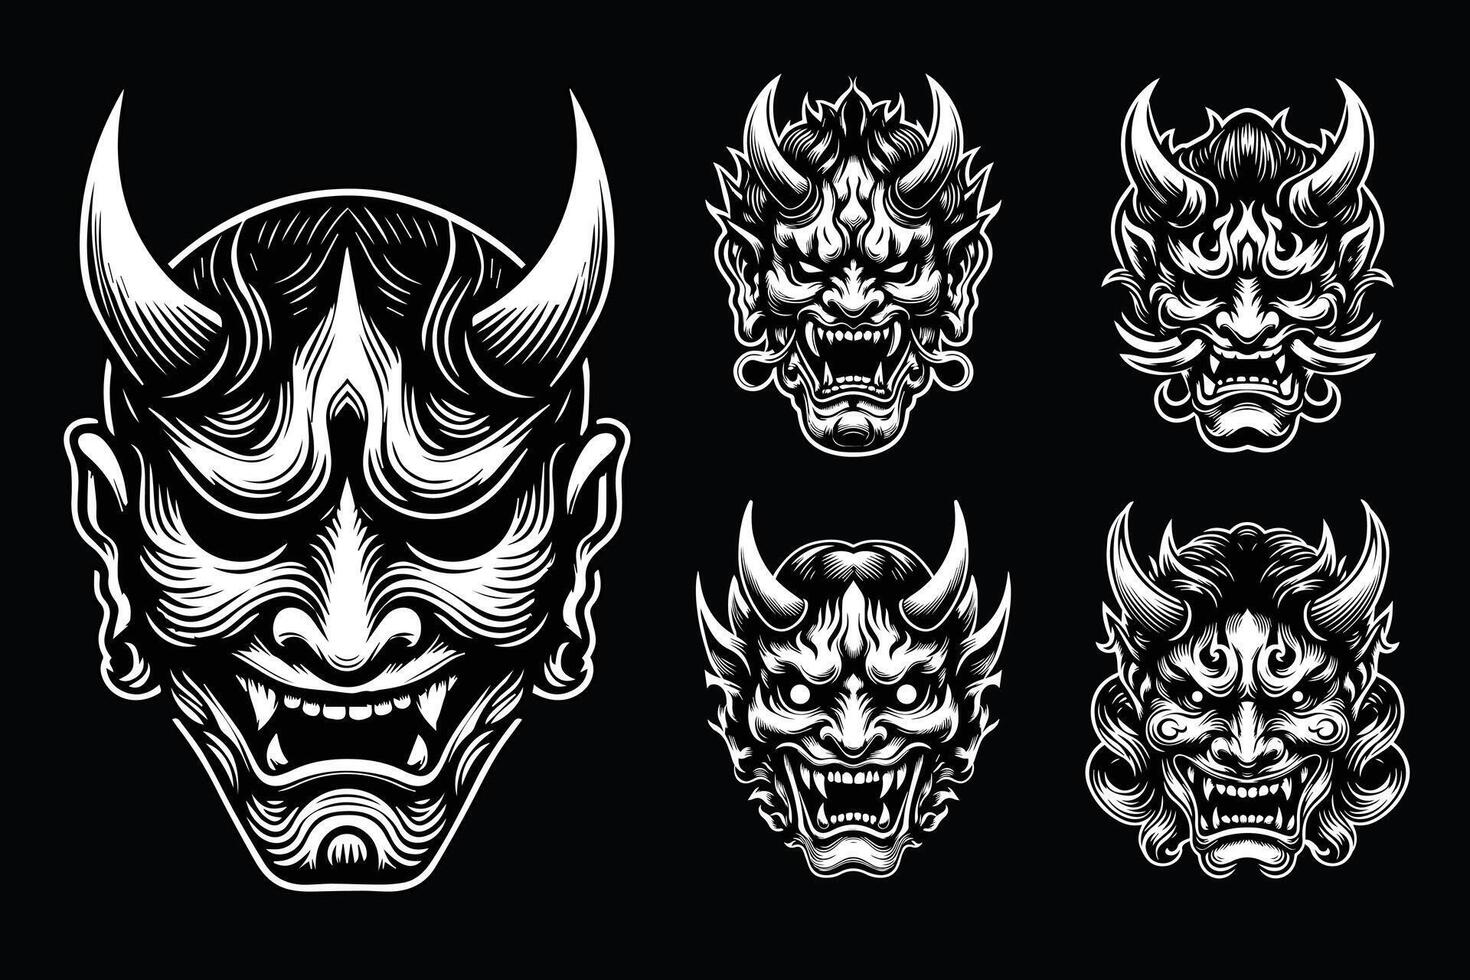 oscuro Arte de miedo japonés hannya máscara negro y blanco ilustración vector